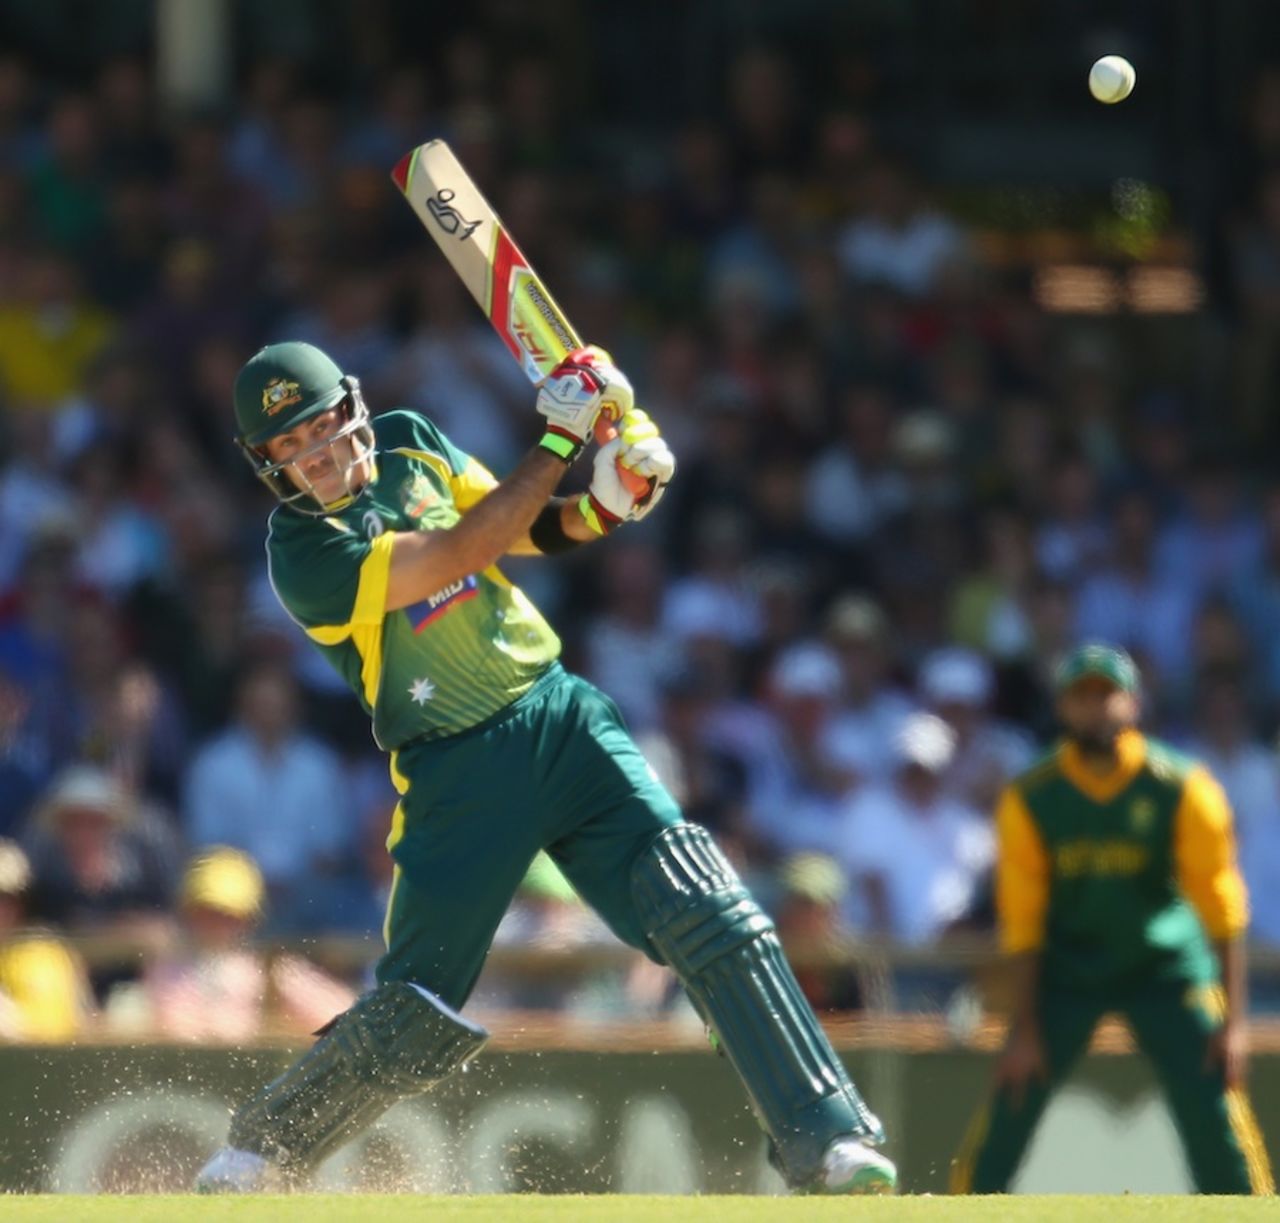 Glenn Maxwell scored 29 off 19 balls, Australia v South Africa, 1st ODI, Perth, November 14, 2014